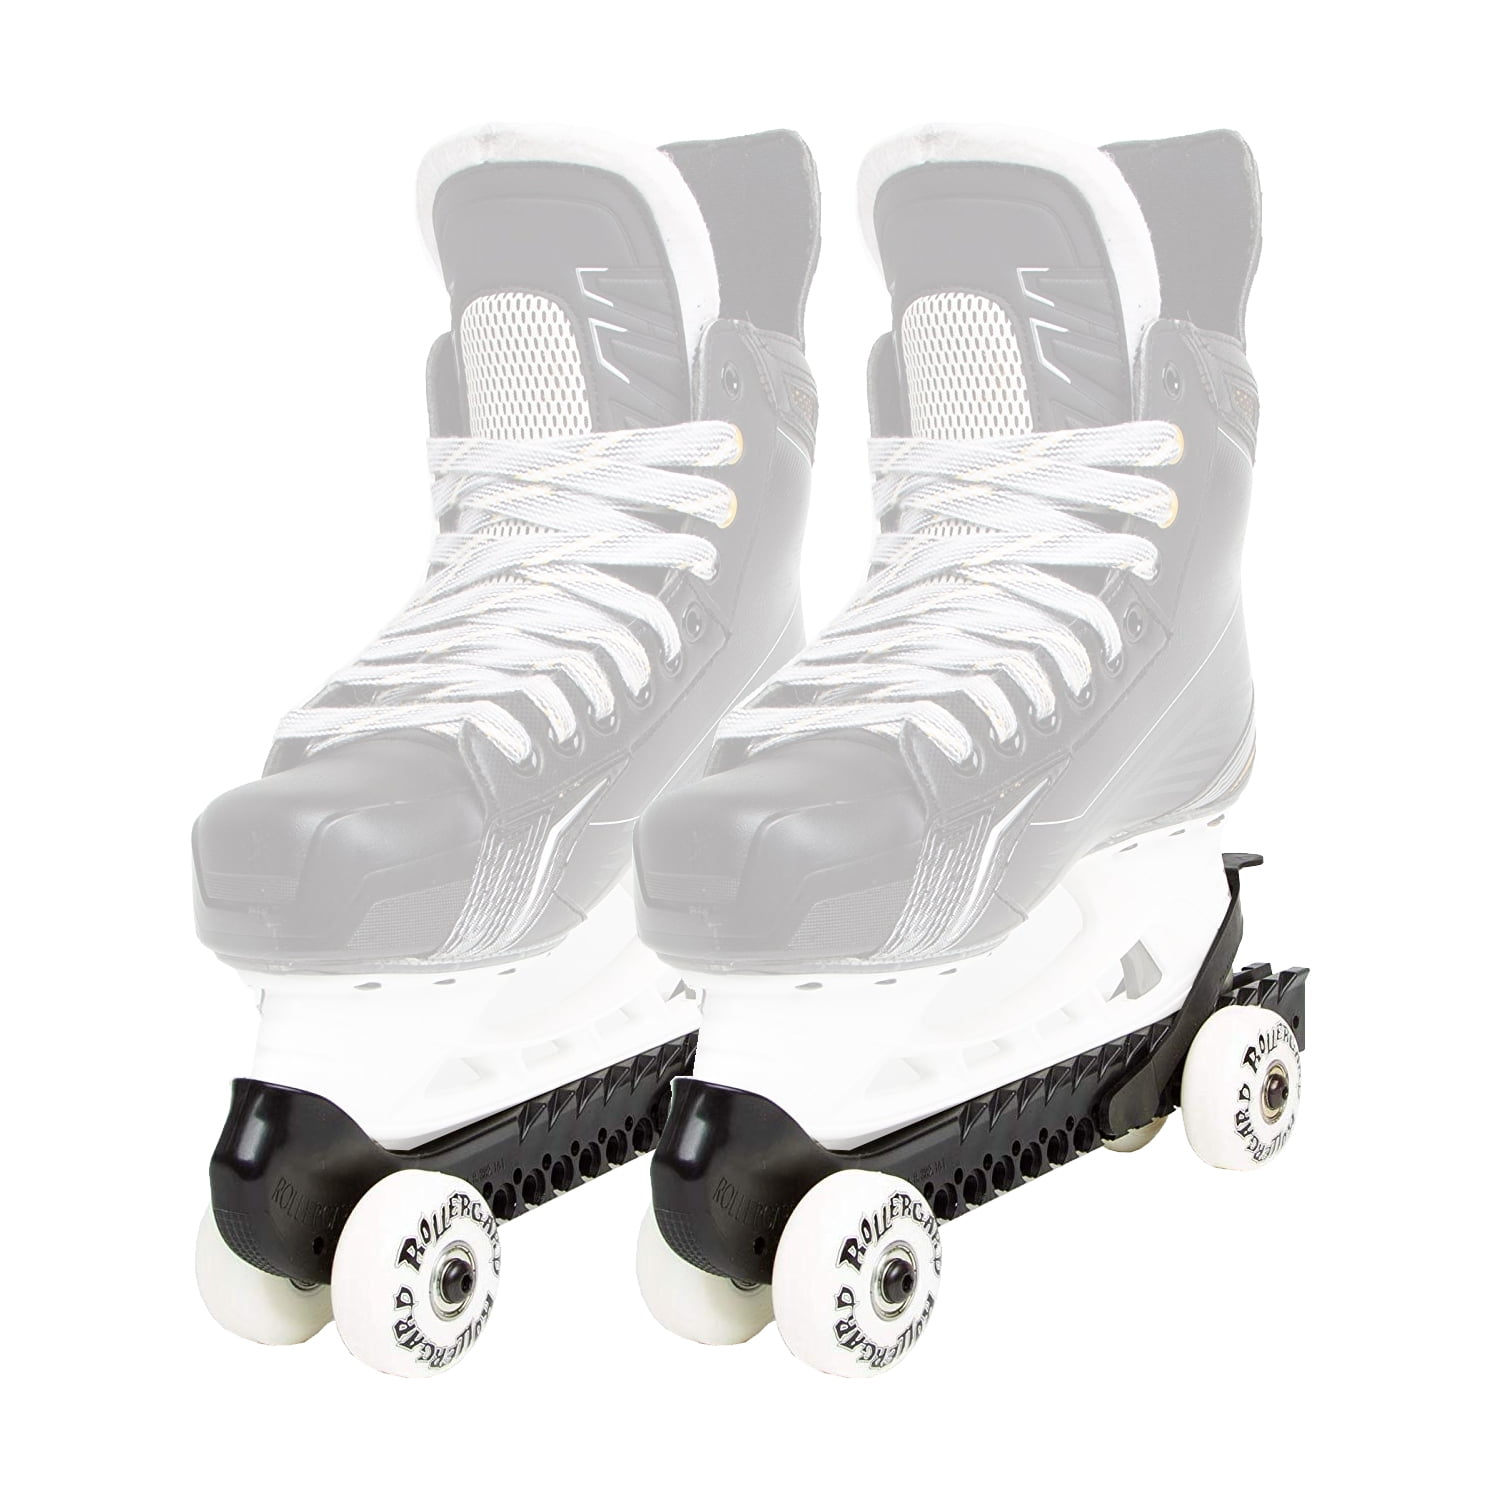 yotijar Anti-Glare Non-Slip Tape for 2 Roller Ice Hockey Skates, 